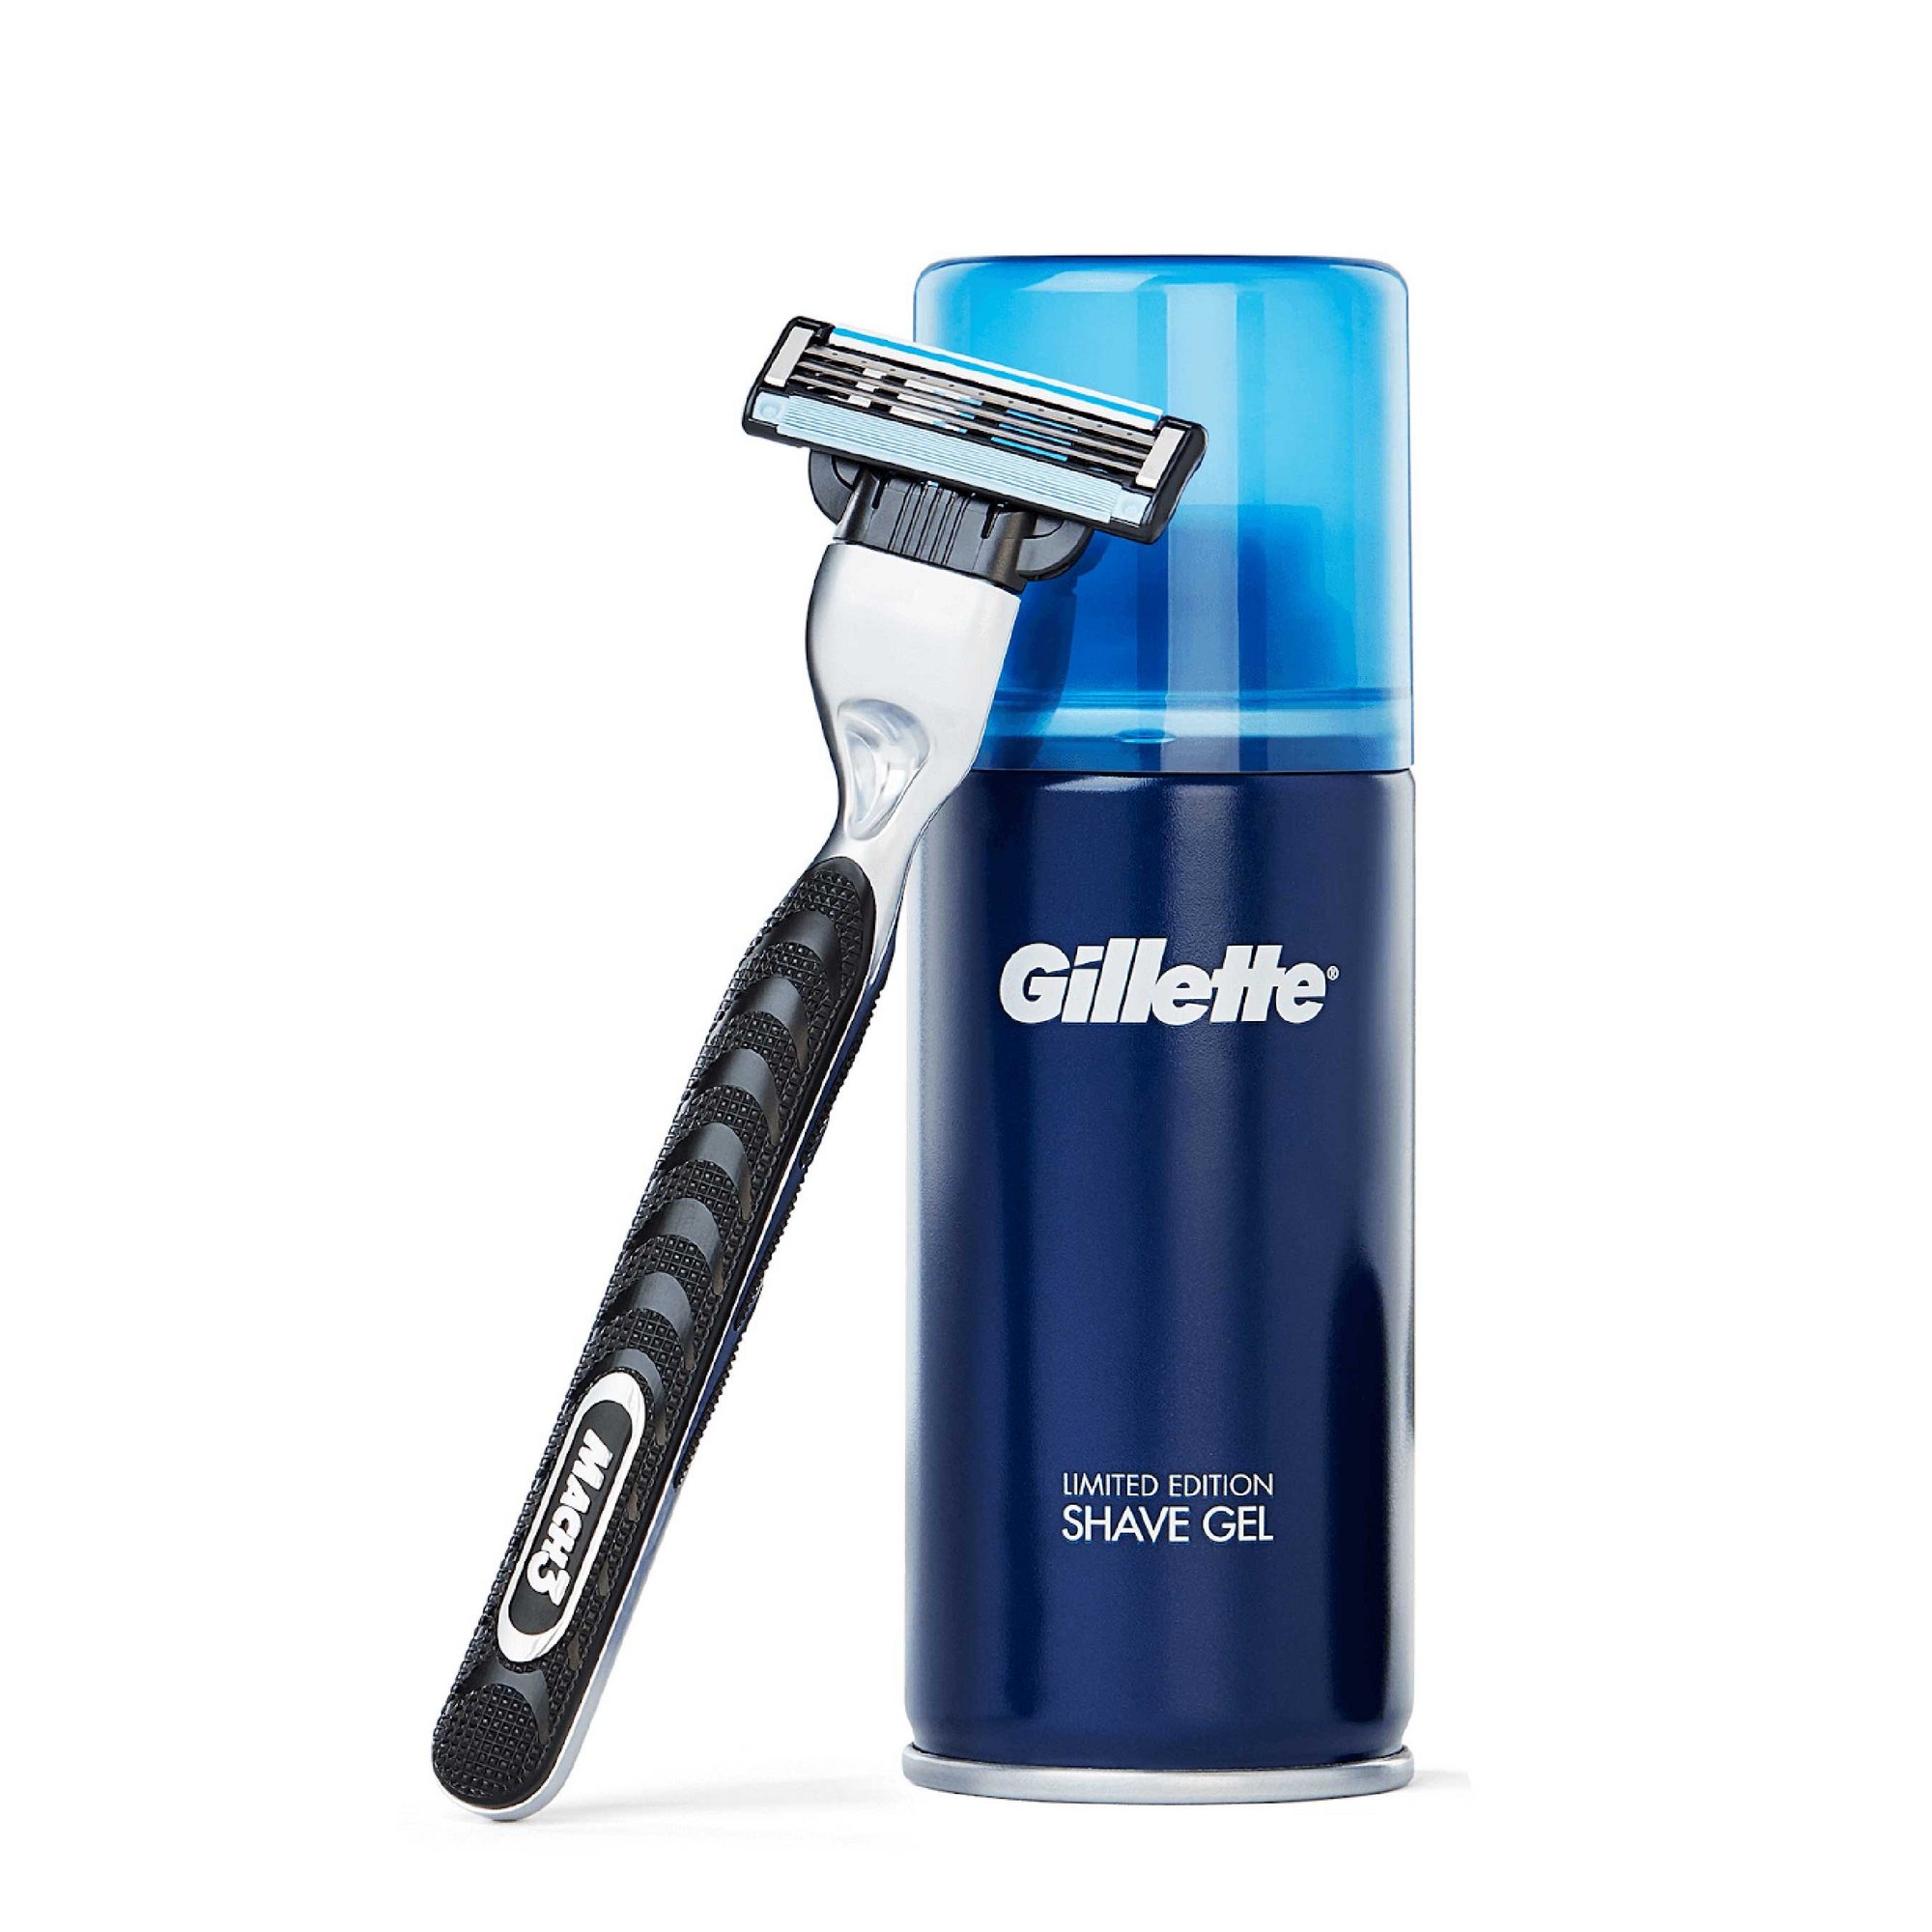 Gillette Limited Edition Mach 3 Razor Gift Set